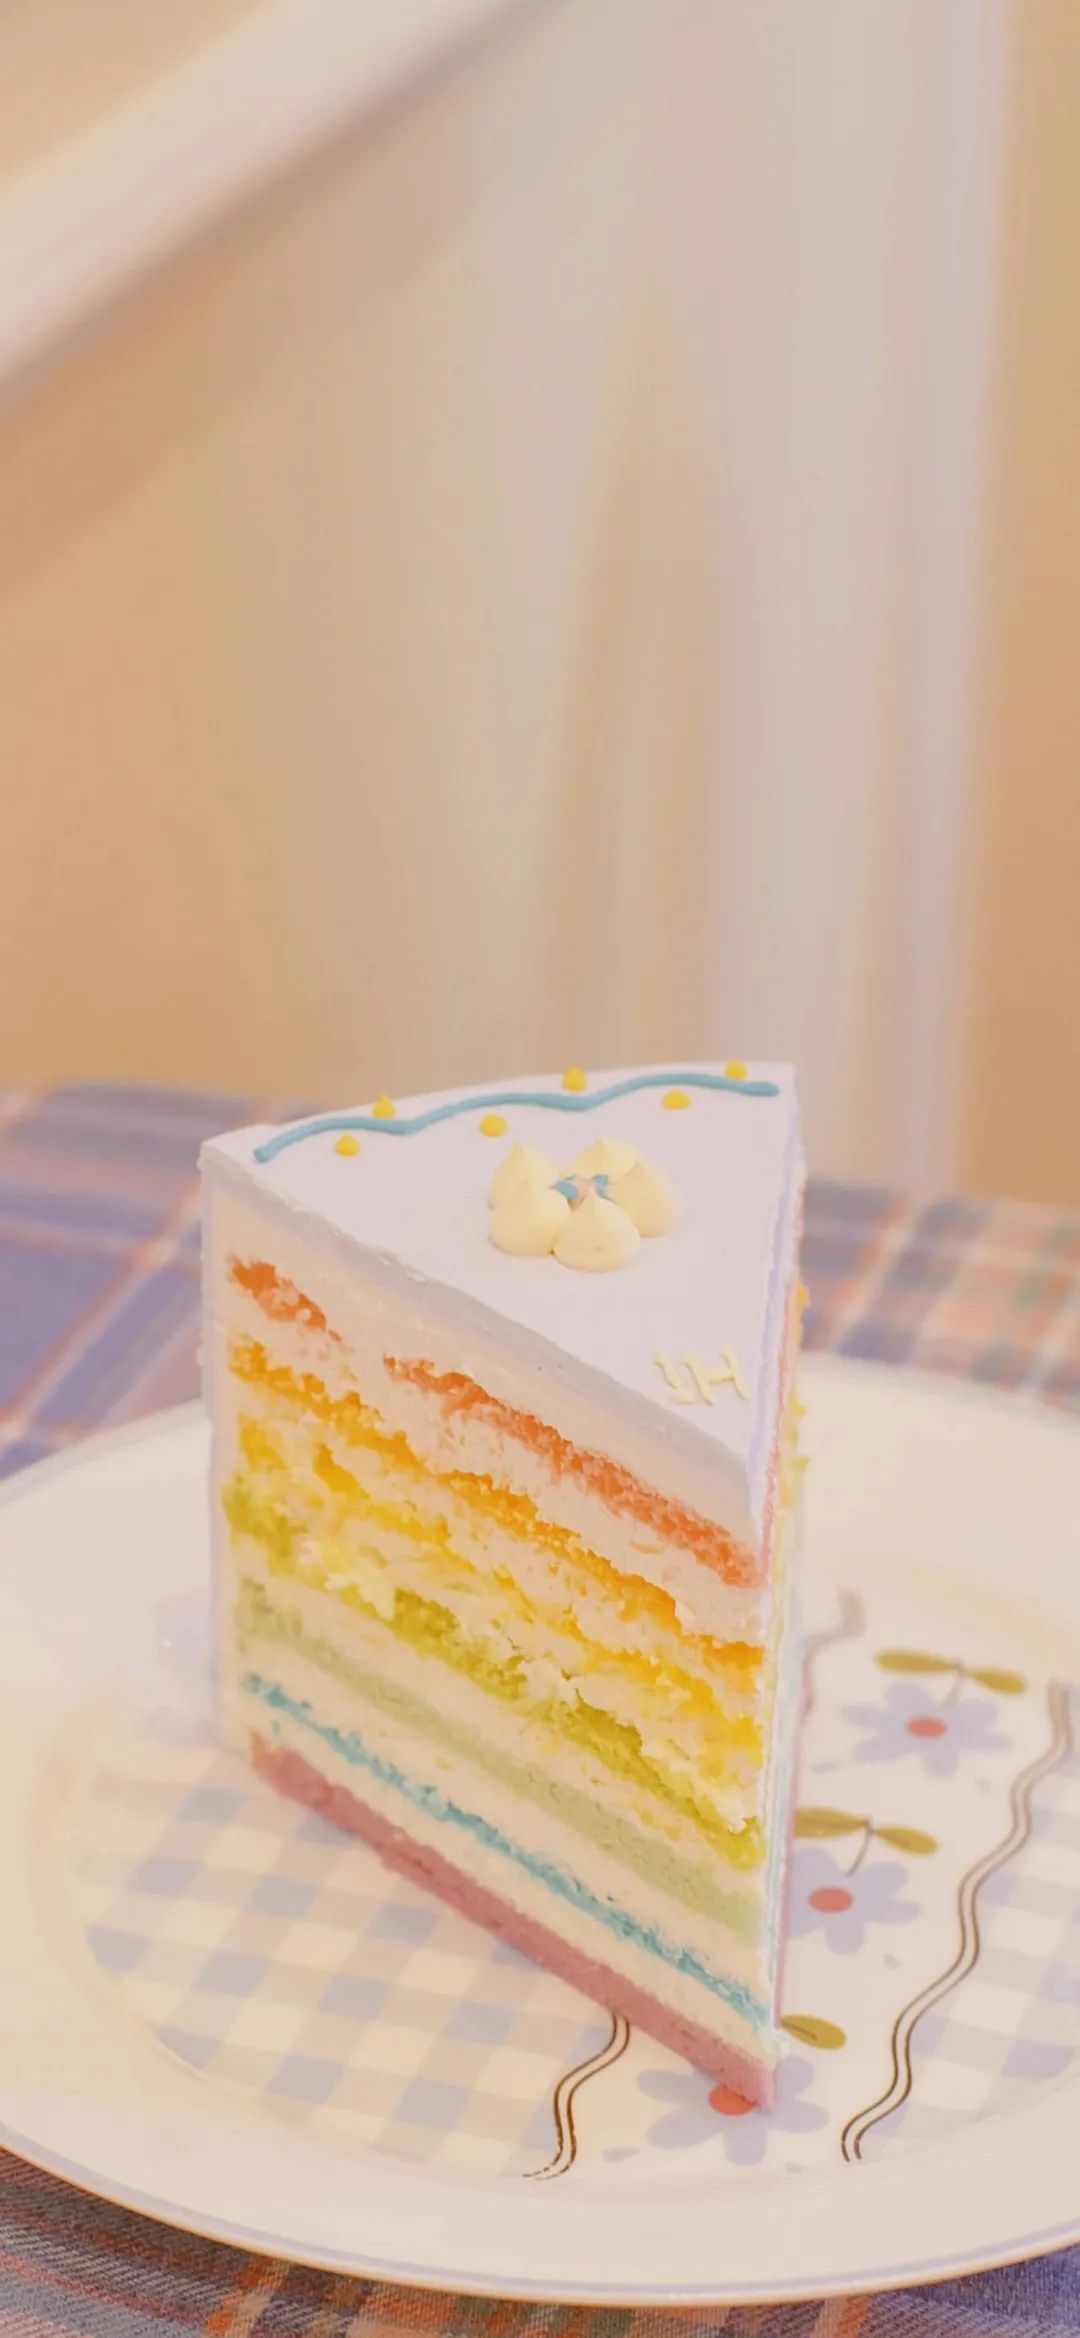 彩虹蛋糕手机壁纸